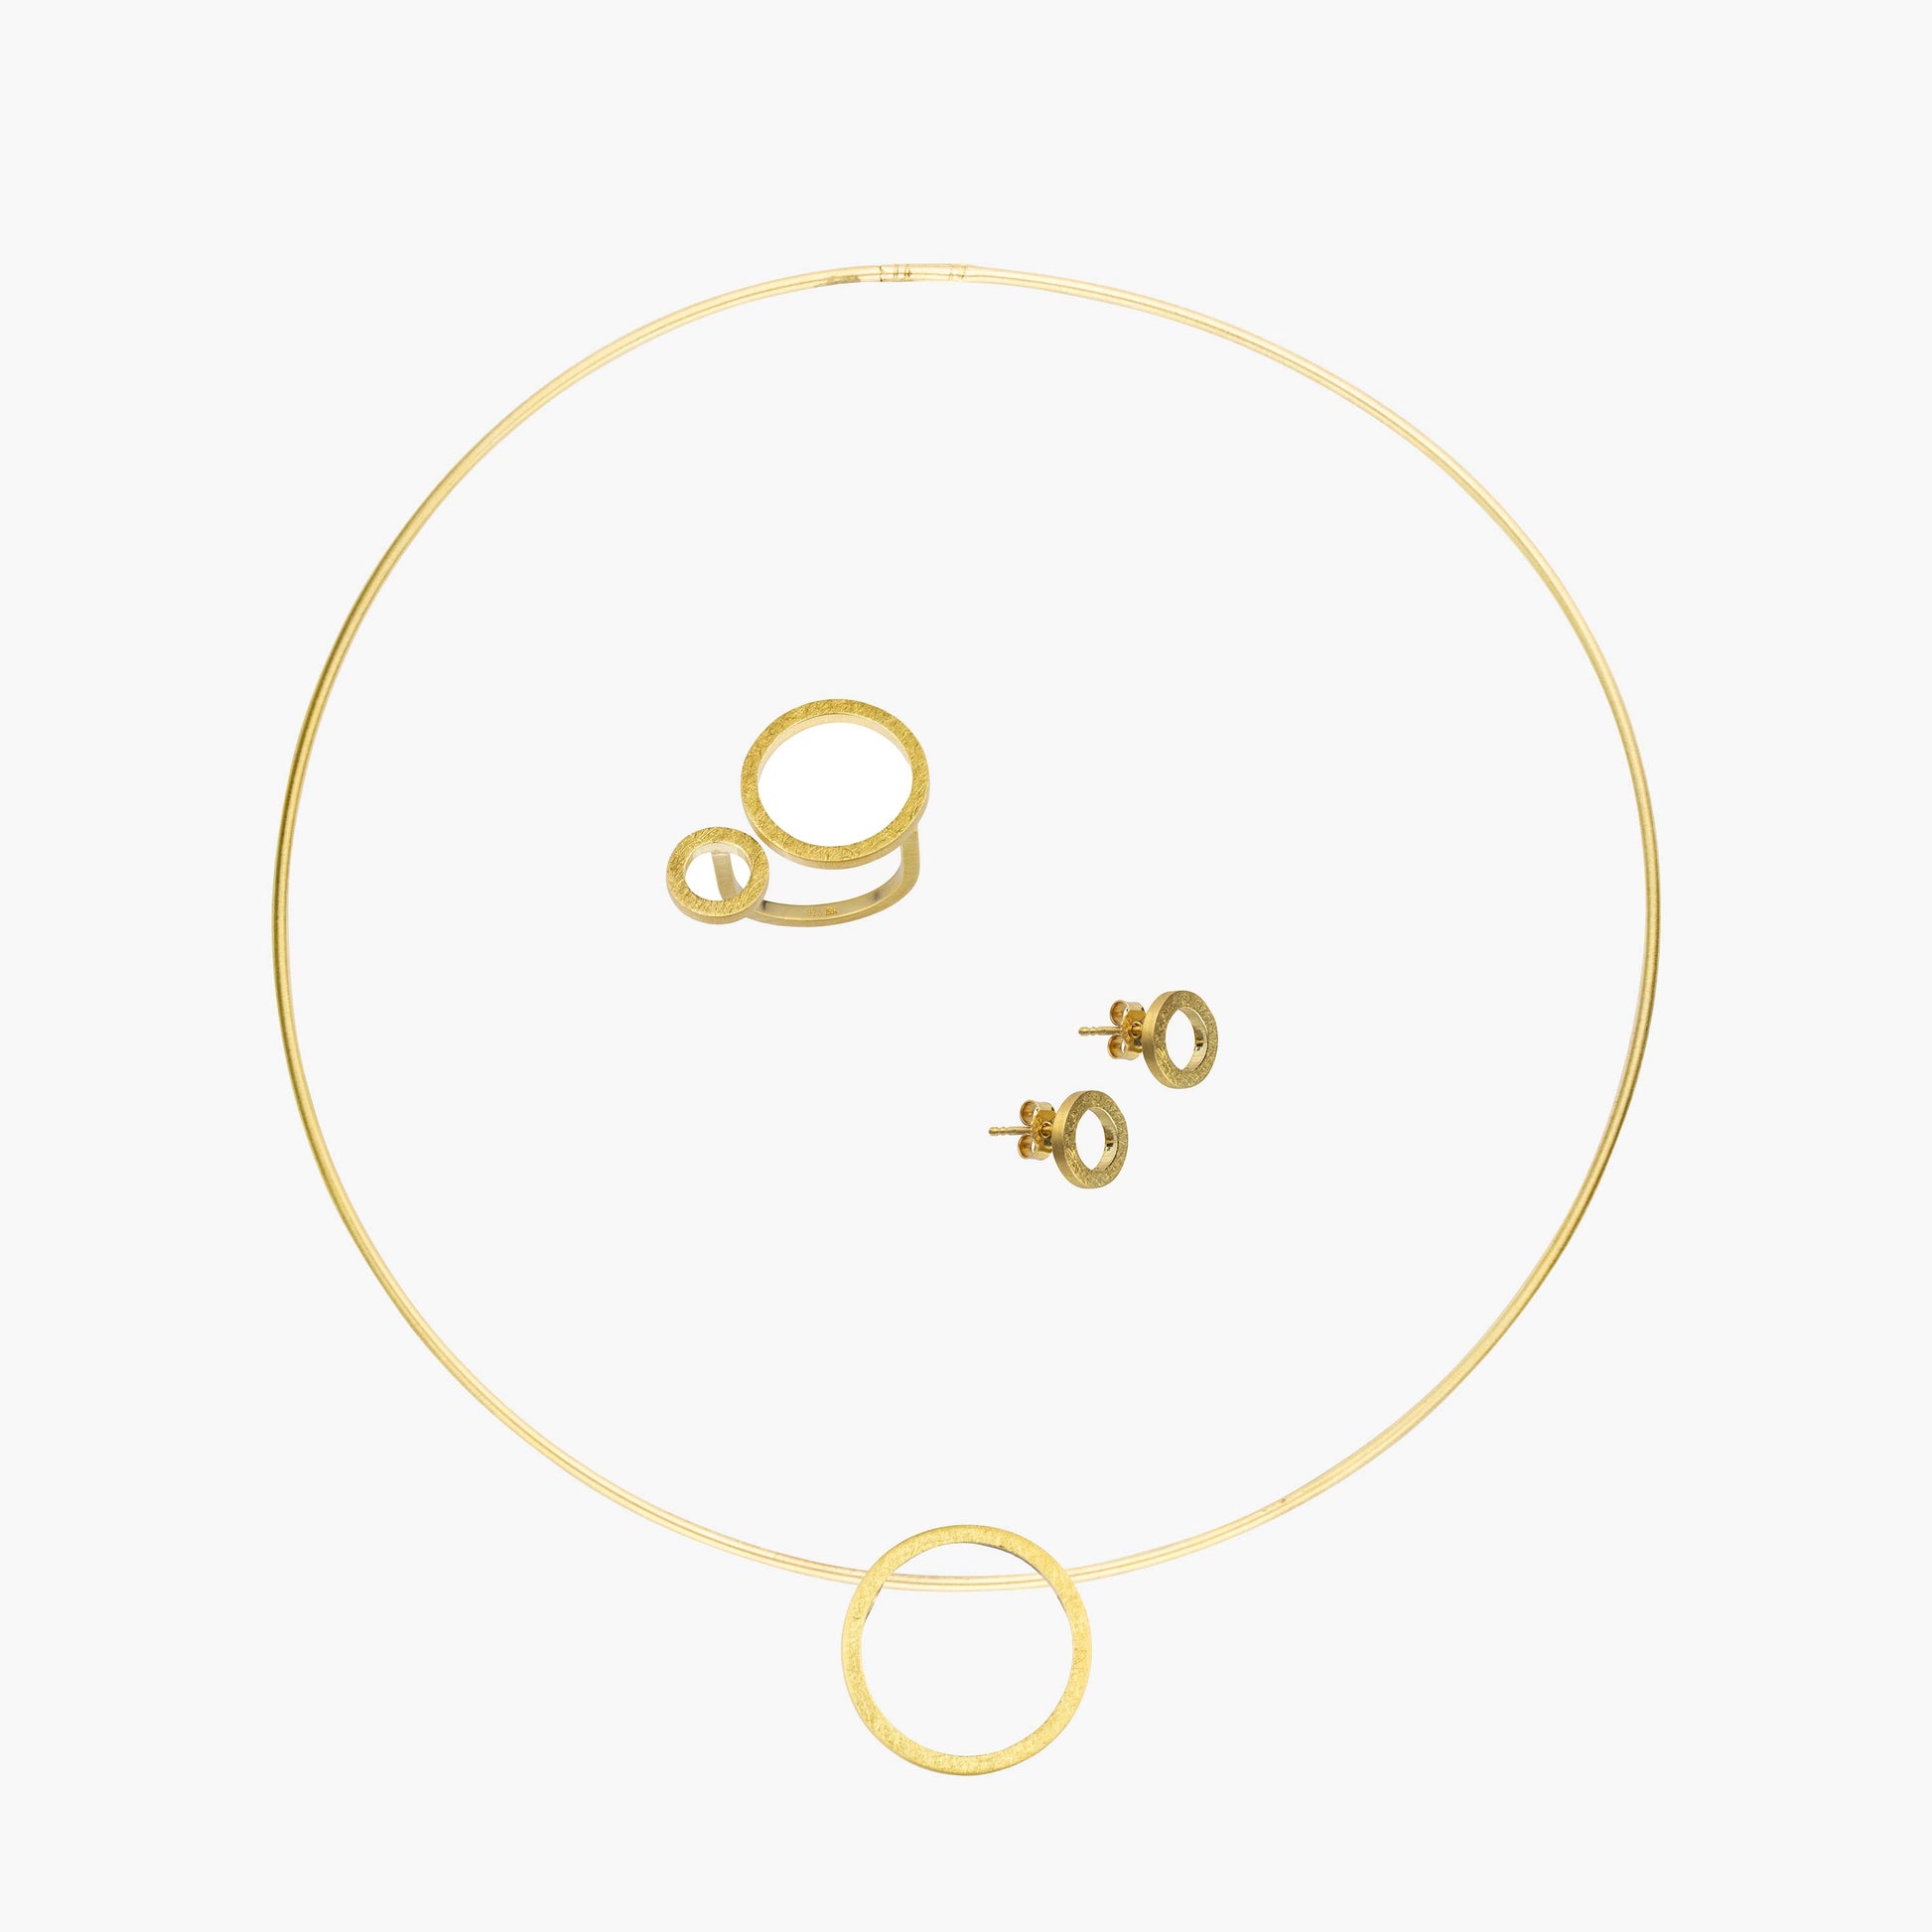 Das MAXI Set CIRCULAR beinhaltet einen Ring, zwei Ohrstecker sowie eine Kette mit Anhänger. Diese bestehen aus 925er Sterlingsilber sowie einer Vergoldung